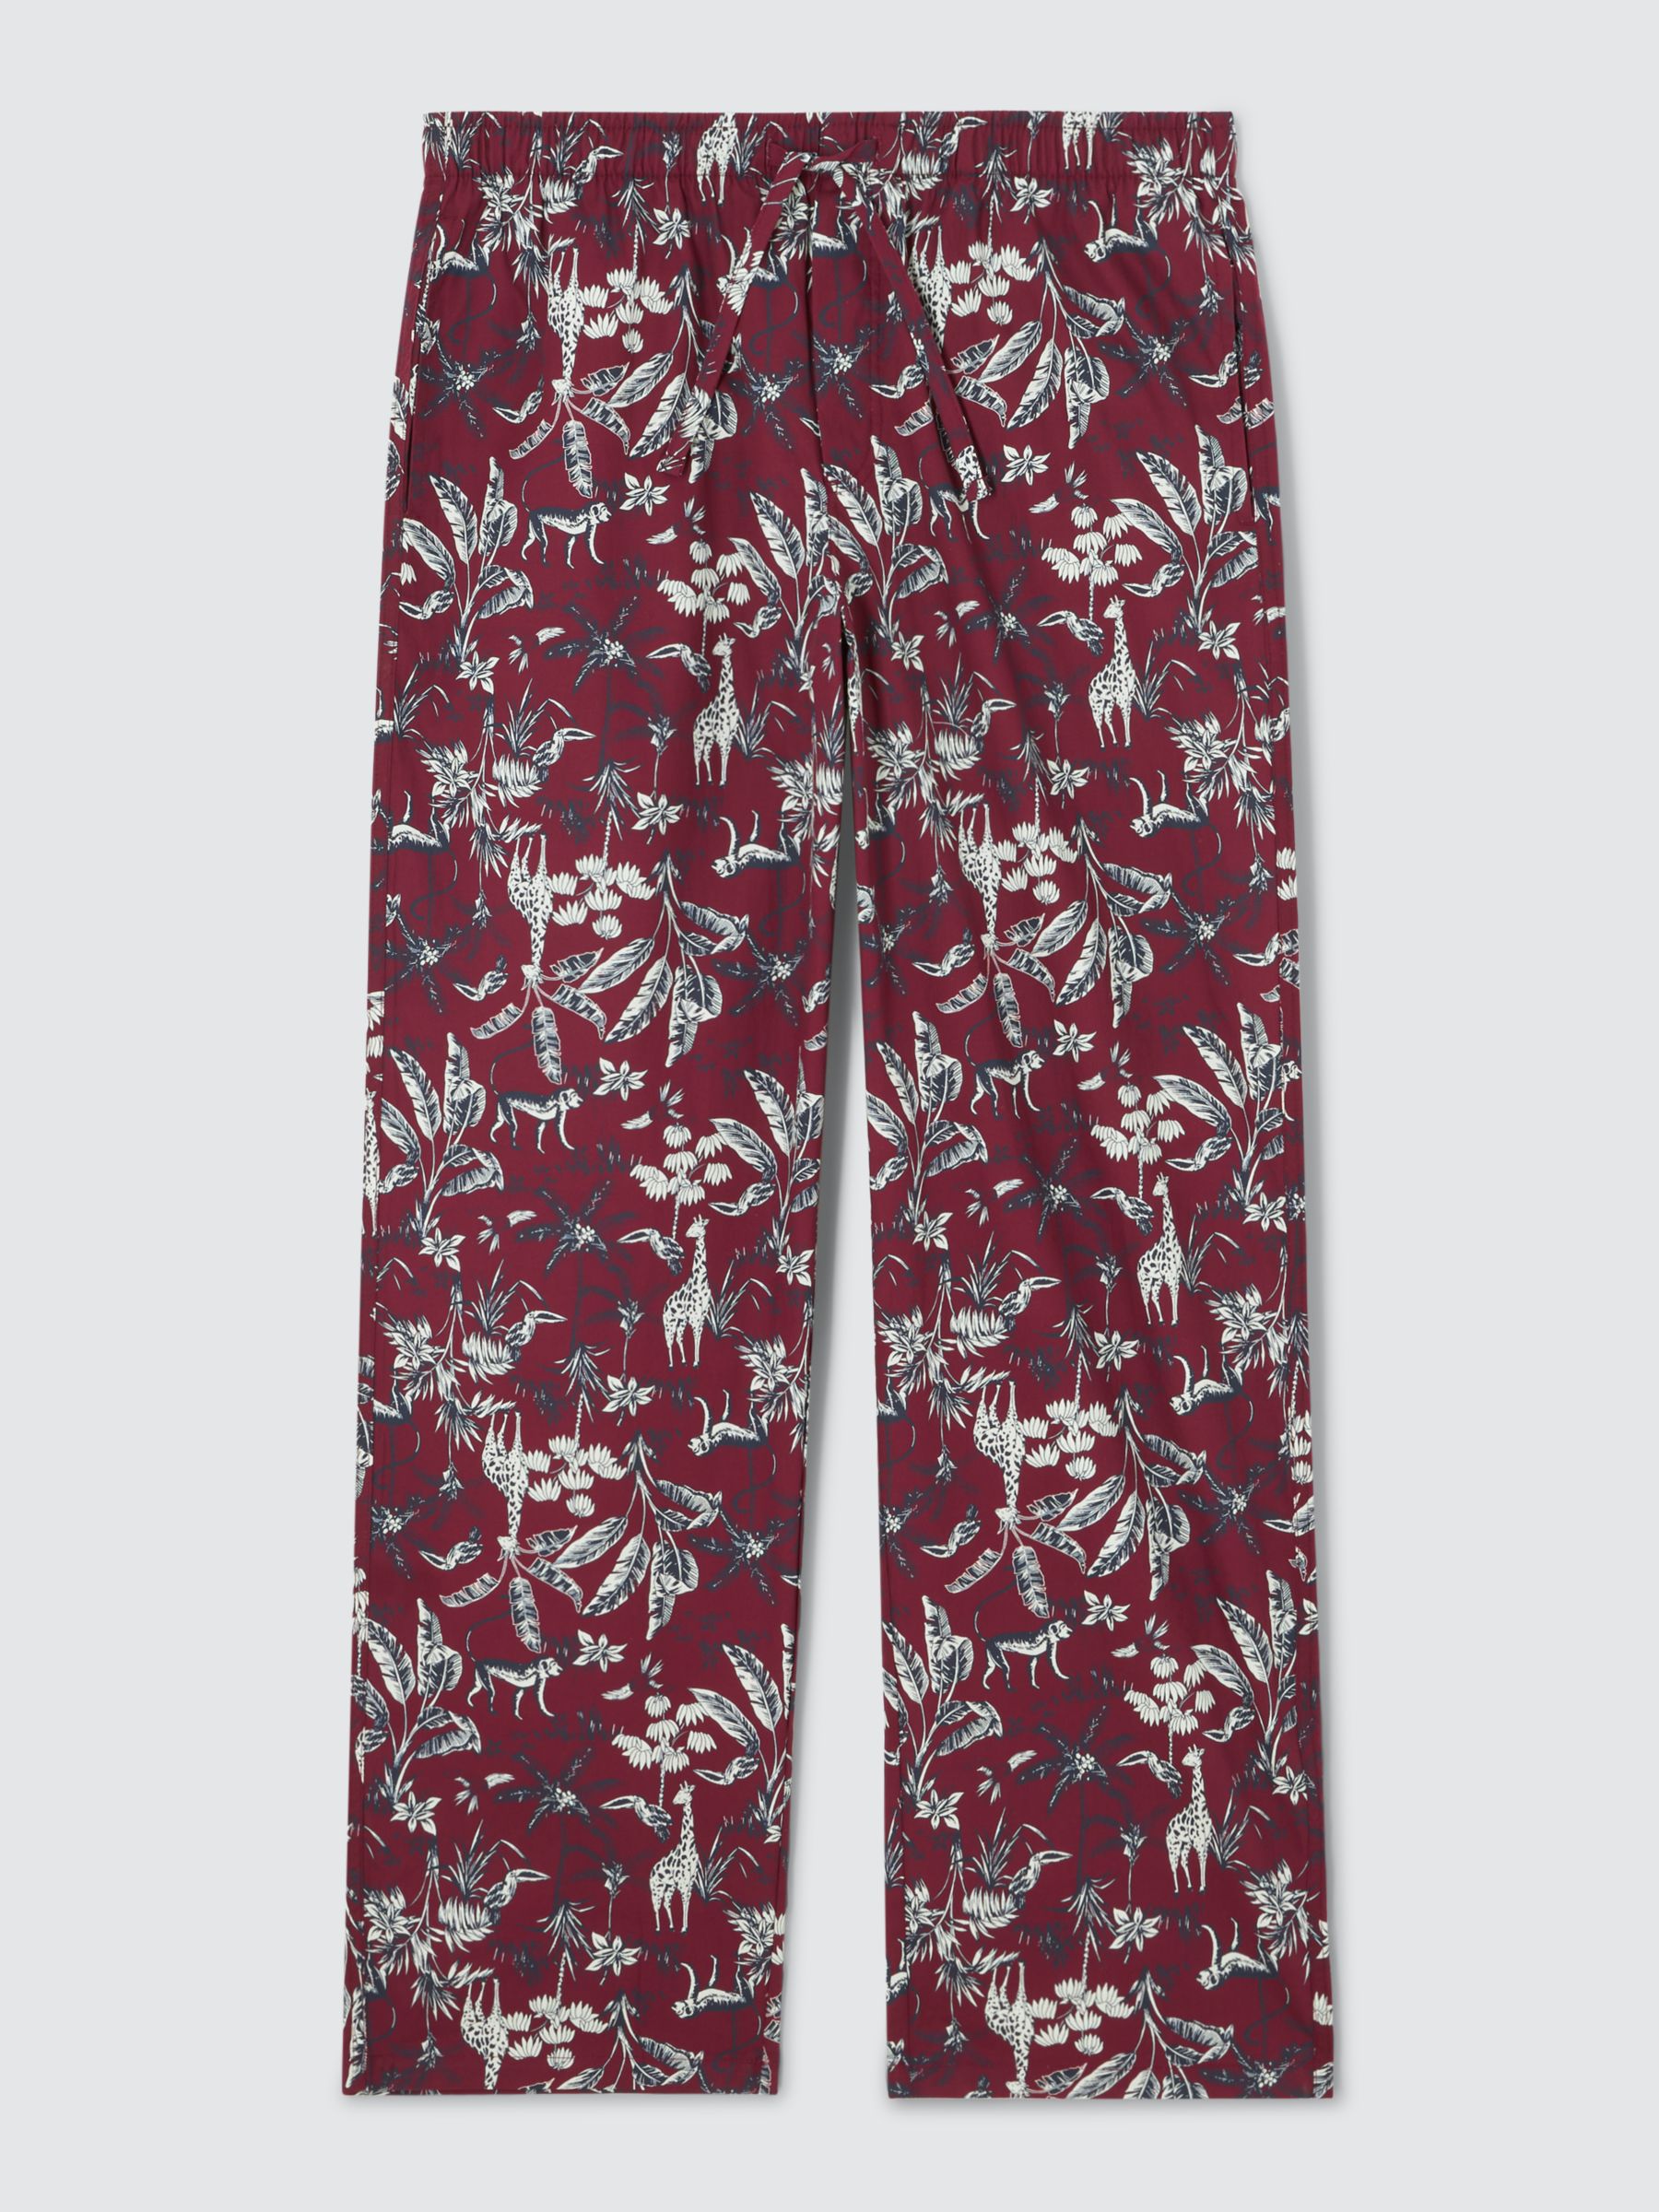 John Lewis Organic Cotton Woven Serengeti Print Lounge Pants, Red/Multi ...